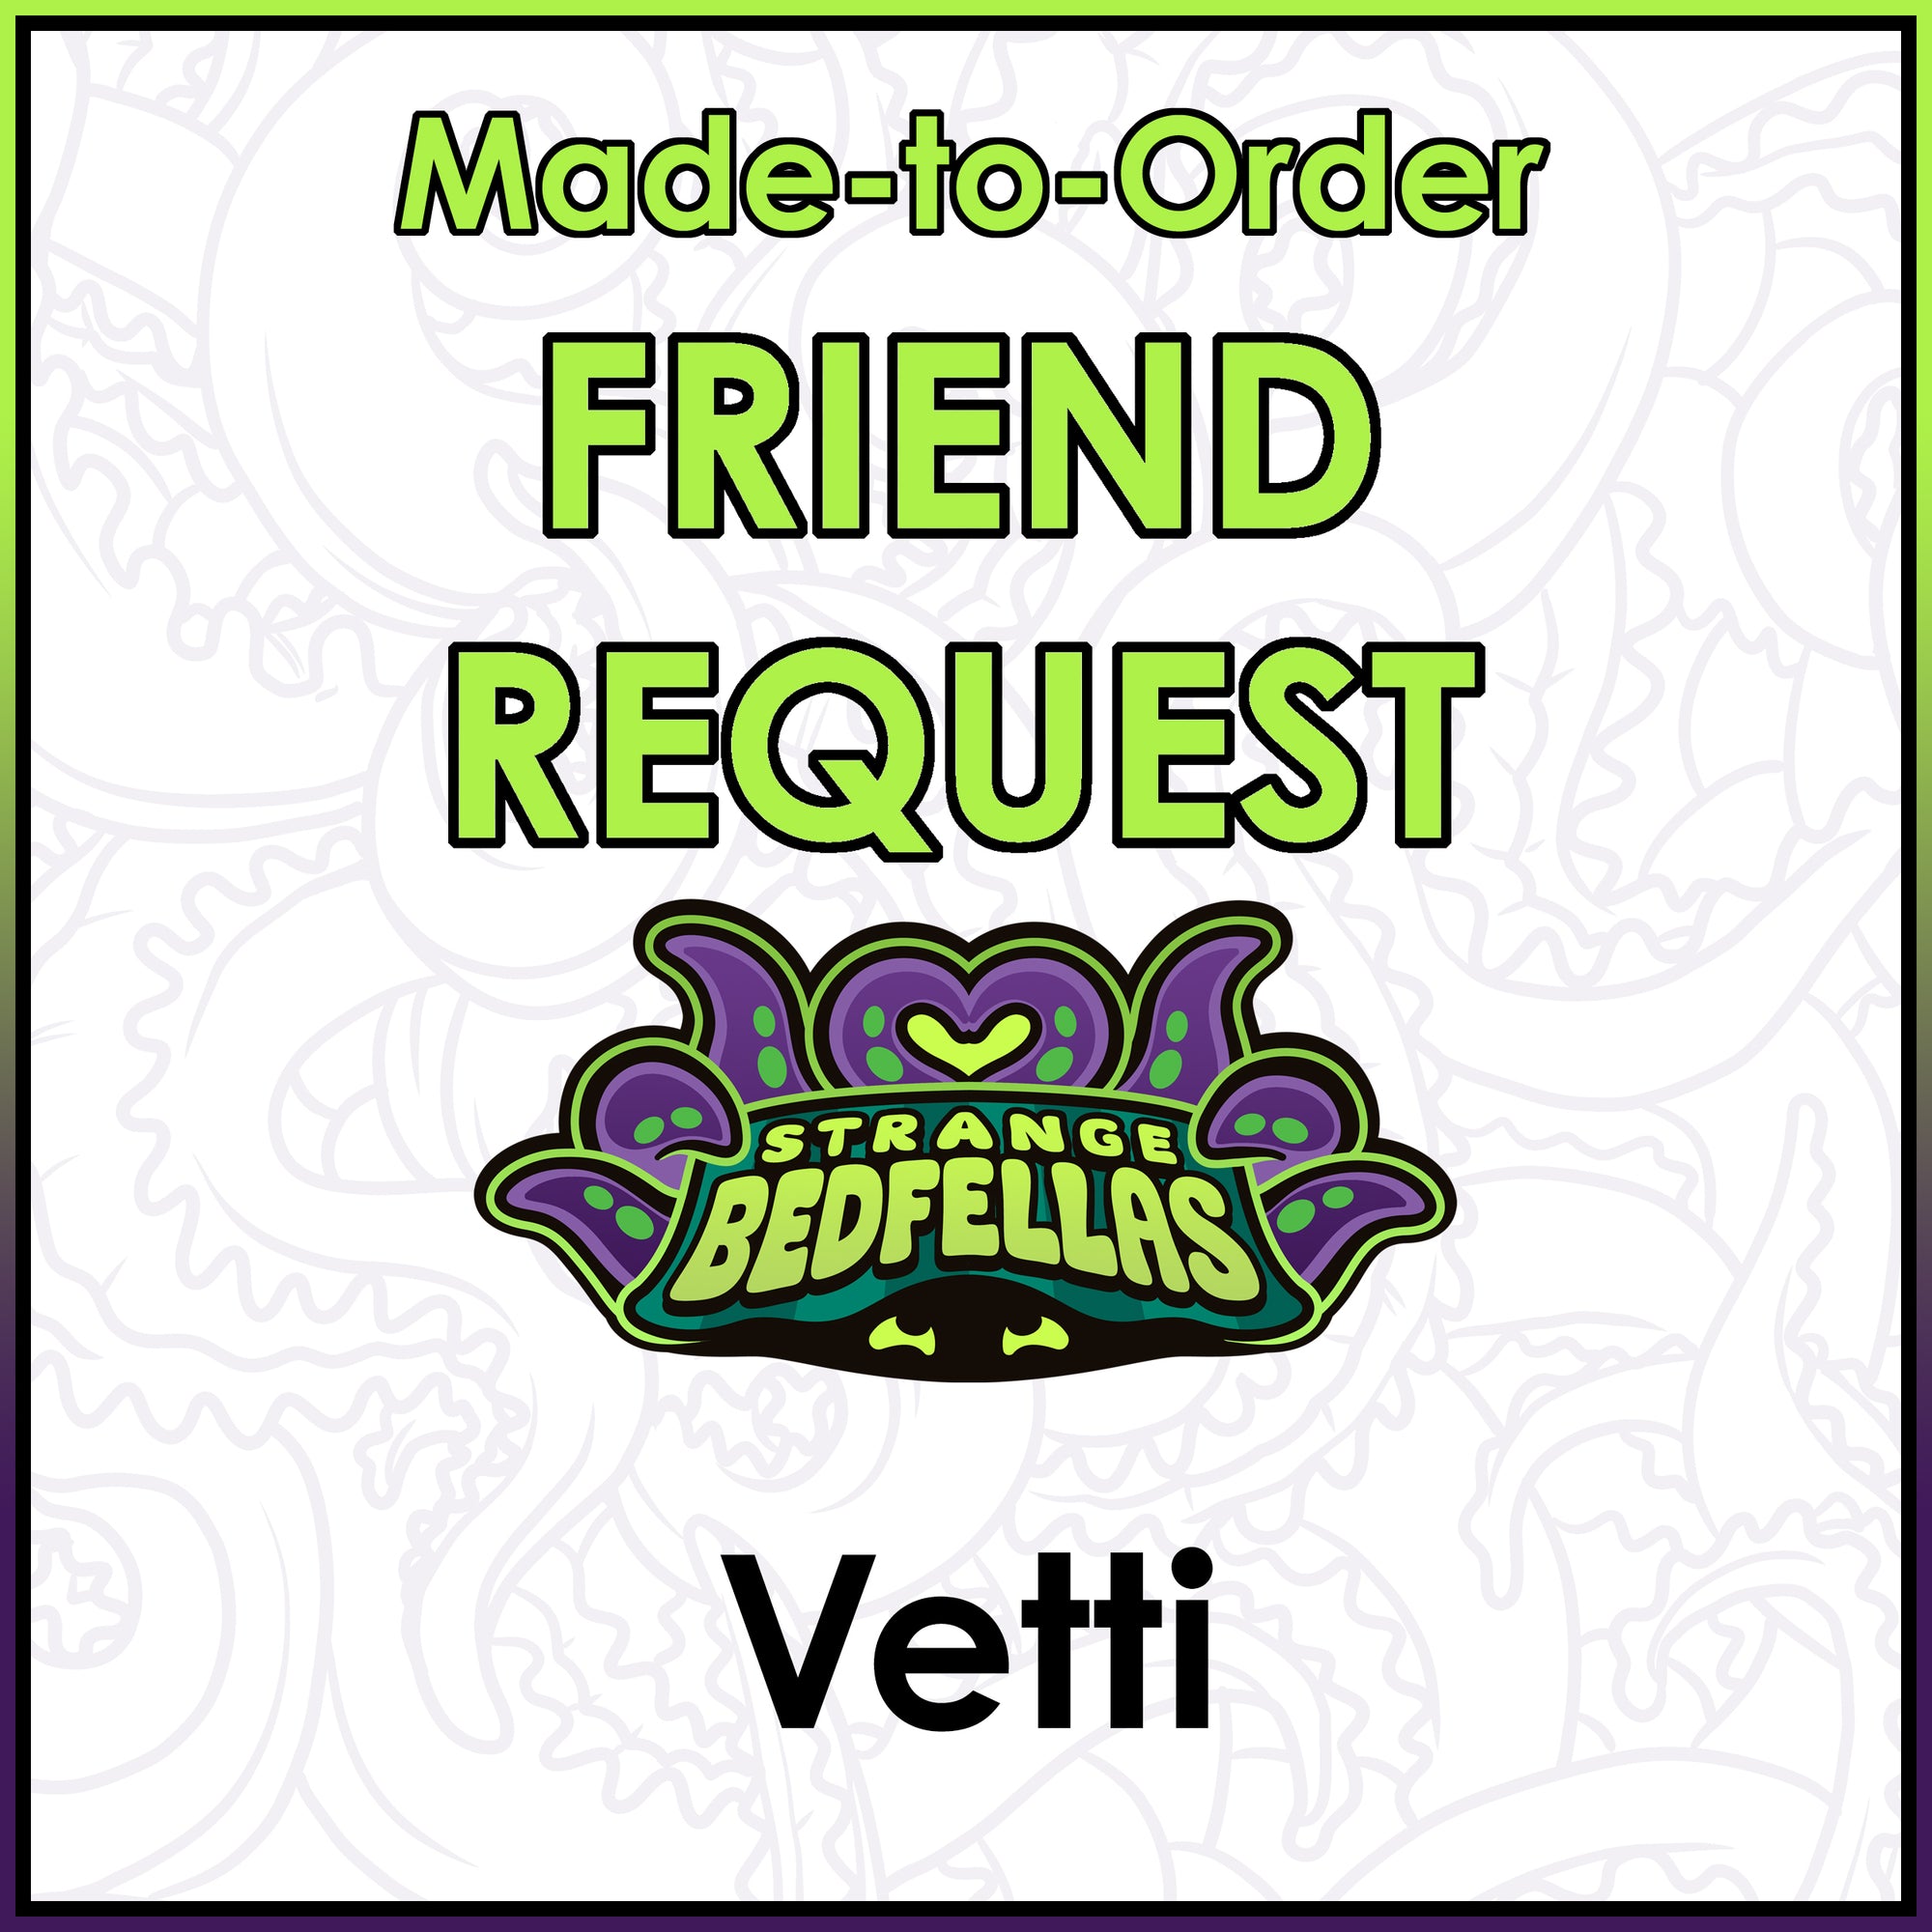 Friend Request - Vetti